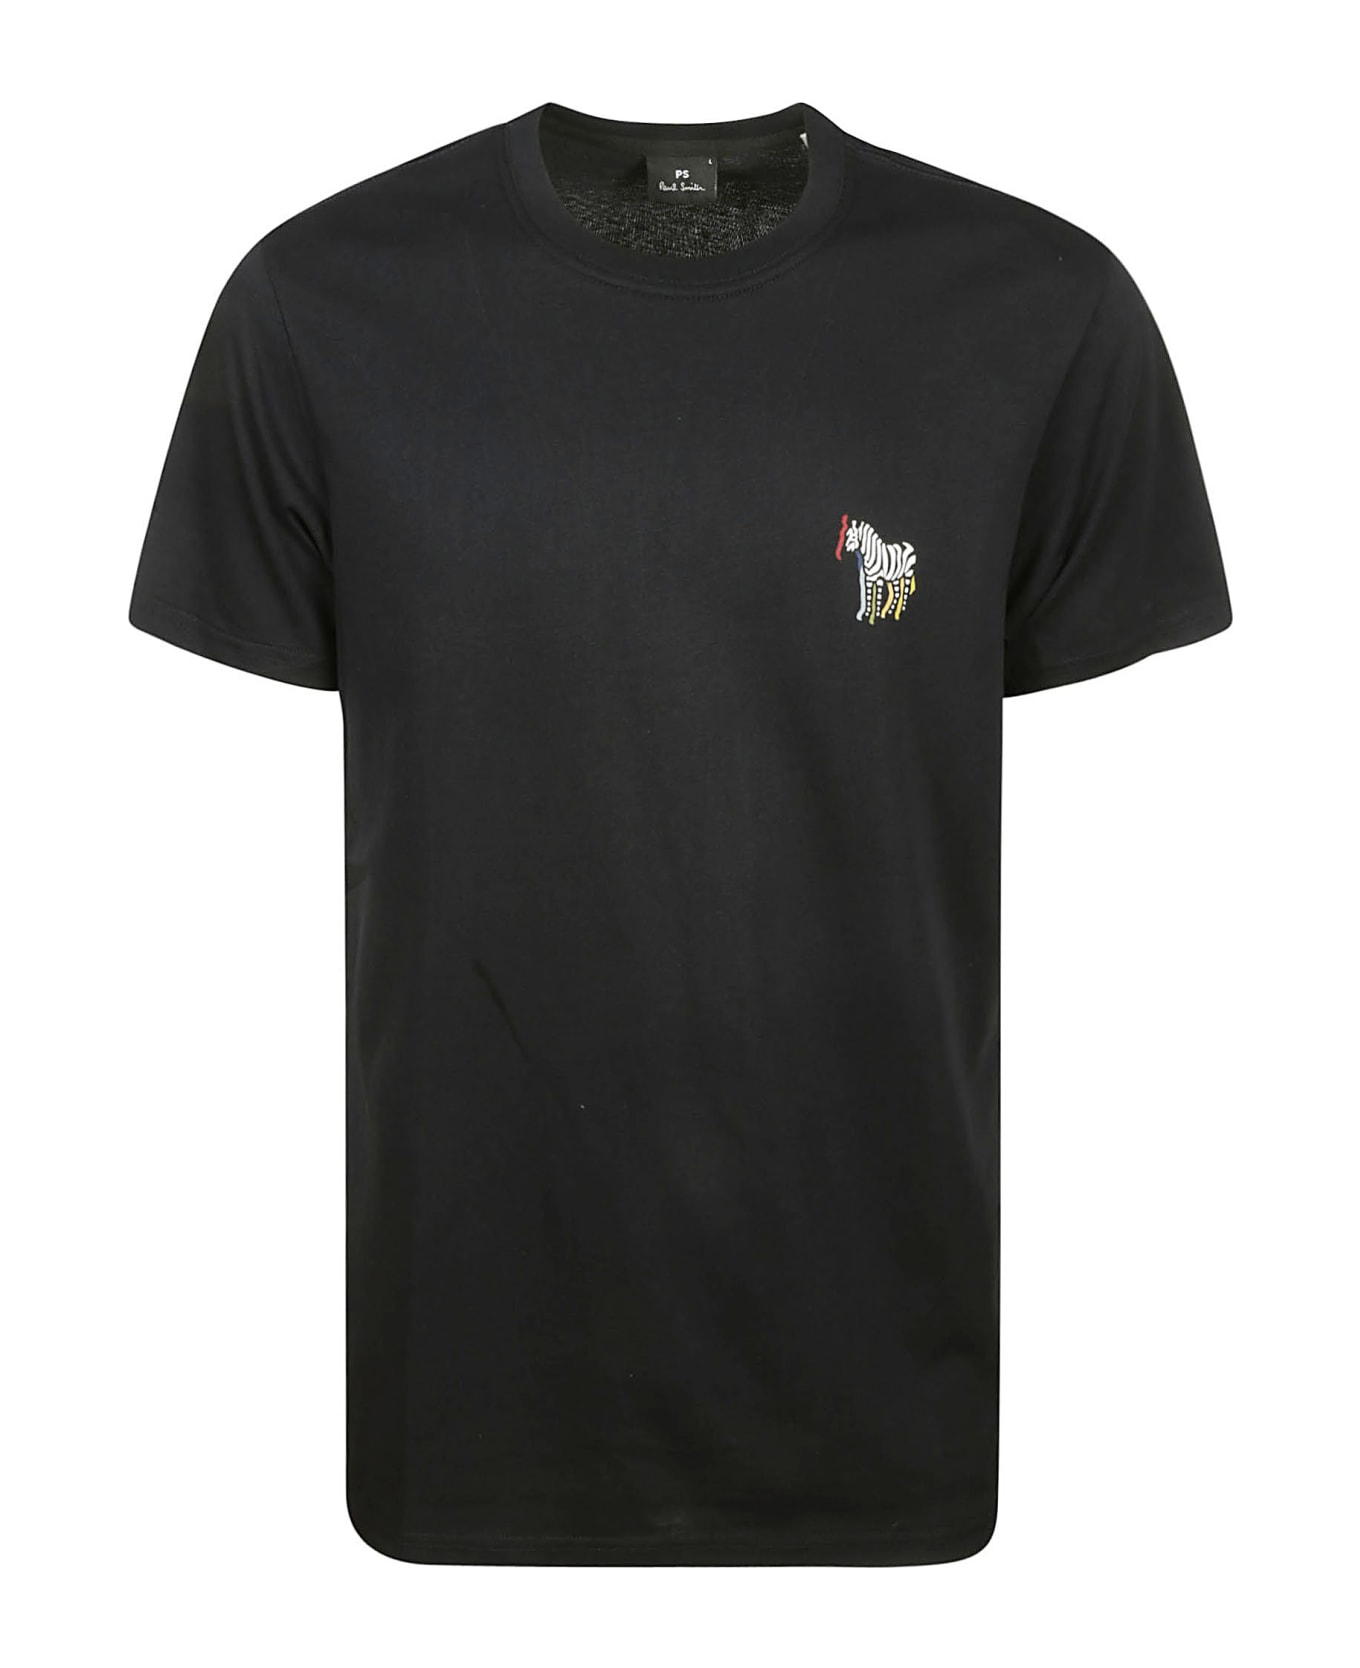 Paul Smith Slim Fit T-shirt B&w Zebra - Very Dark Navy